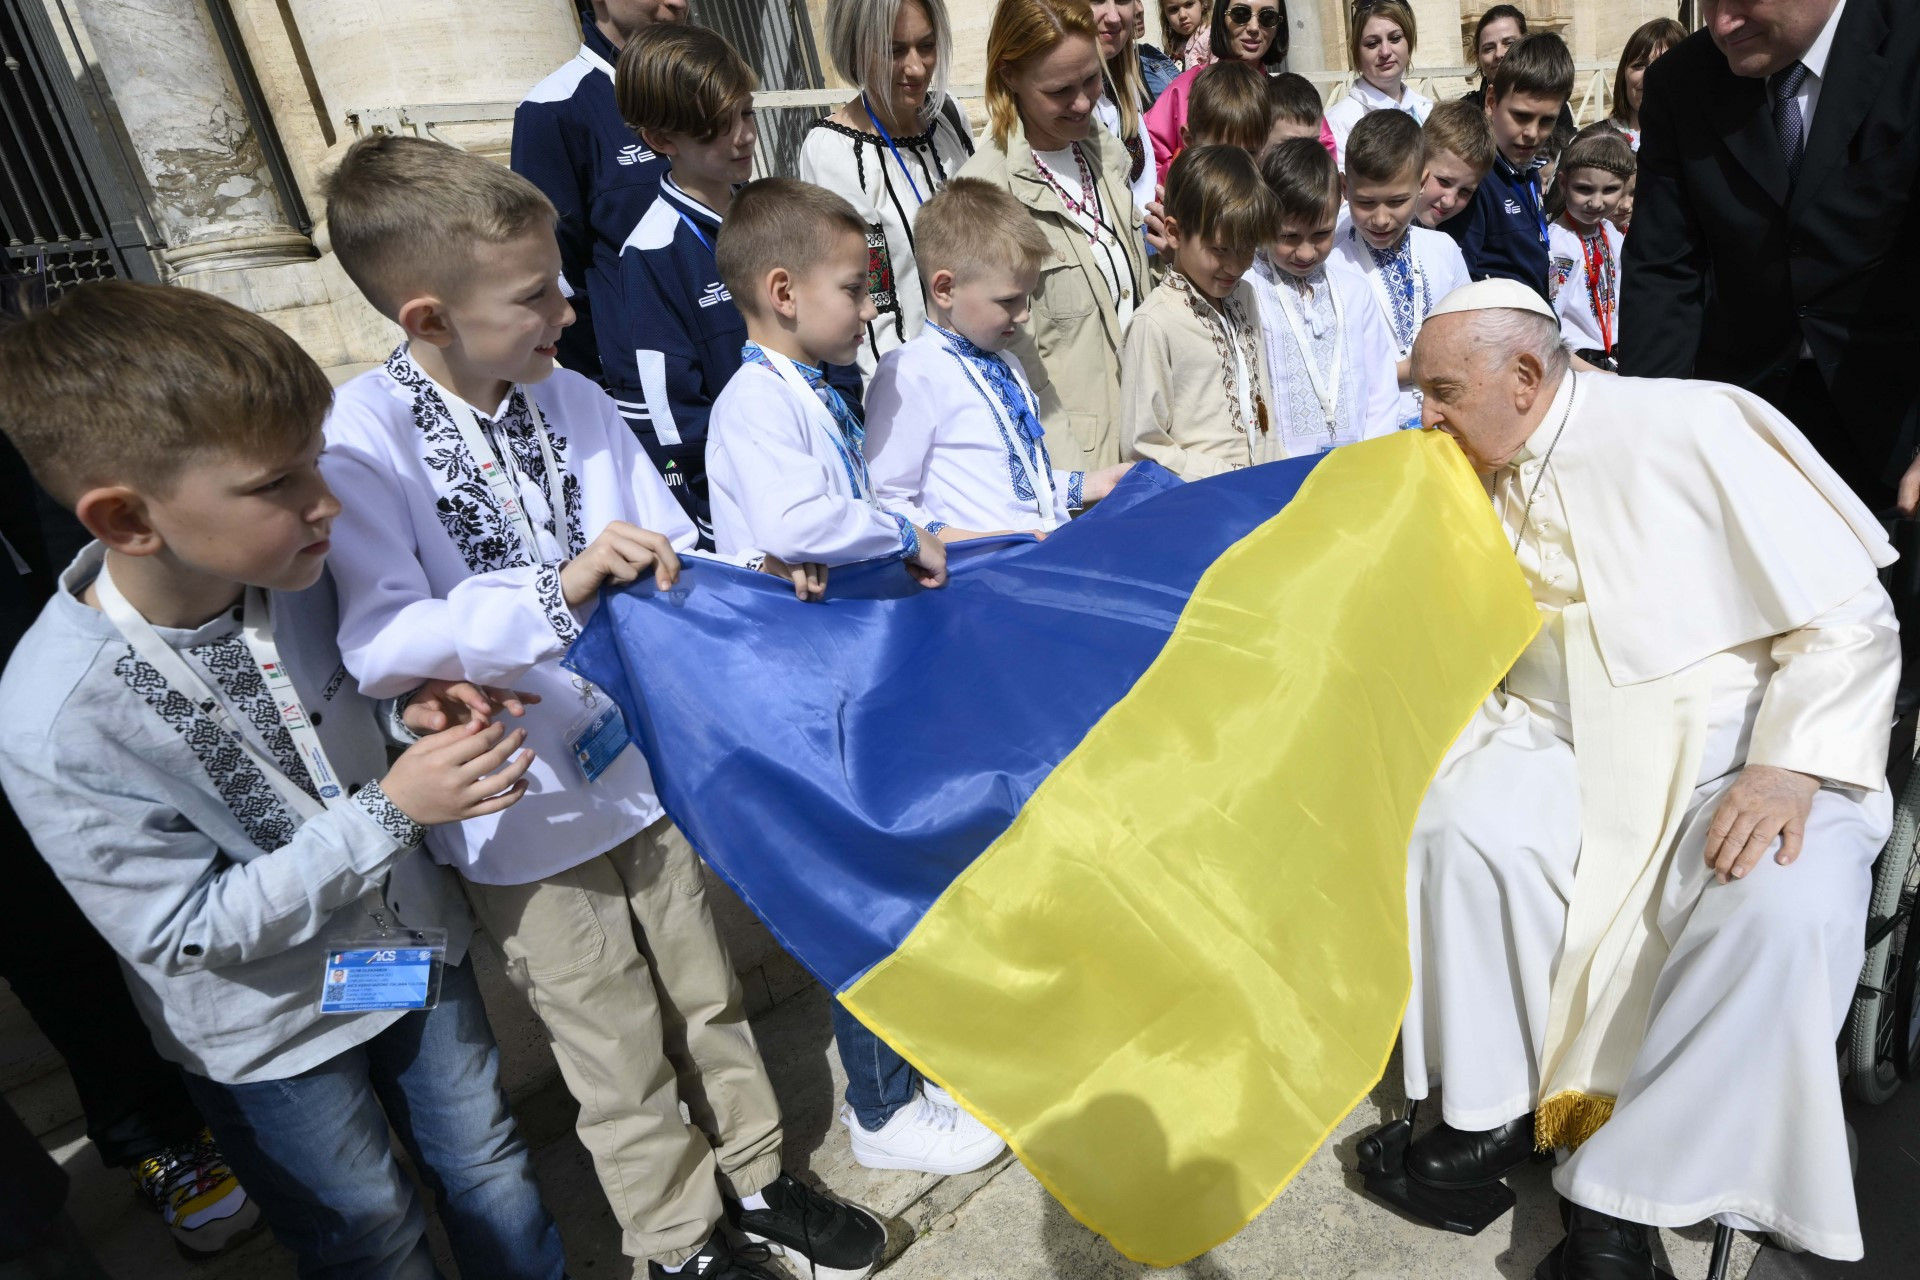 Ob sklepu avdience je papež znova opozoril na številne konflikte po vsem svetu in pozval k prizadevanjem za mir